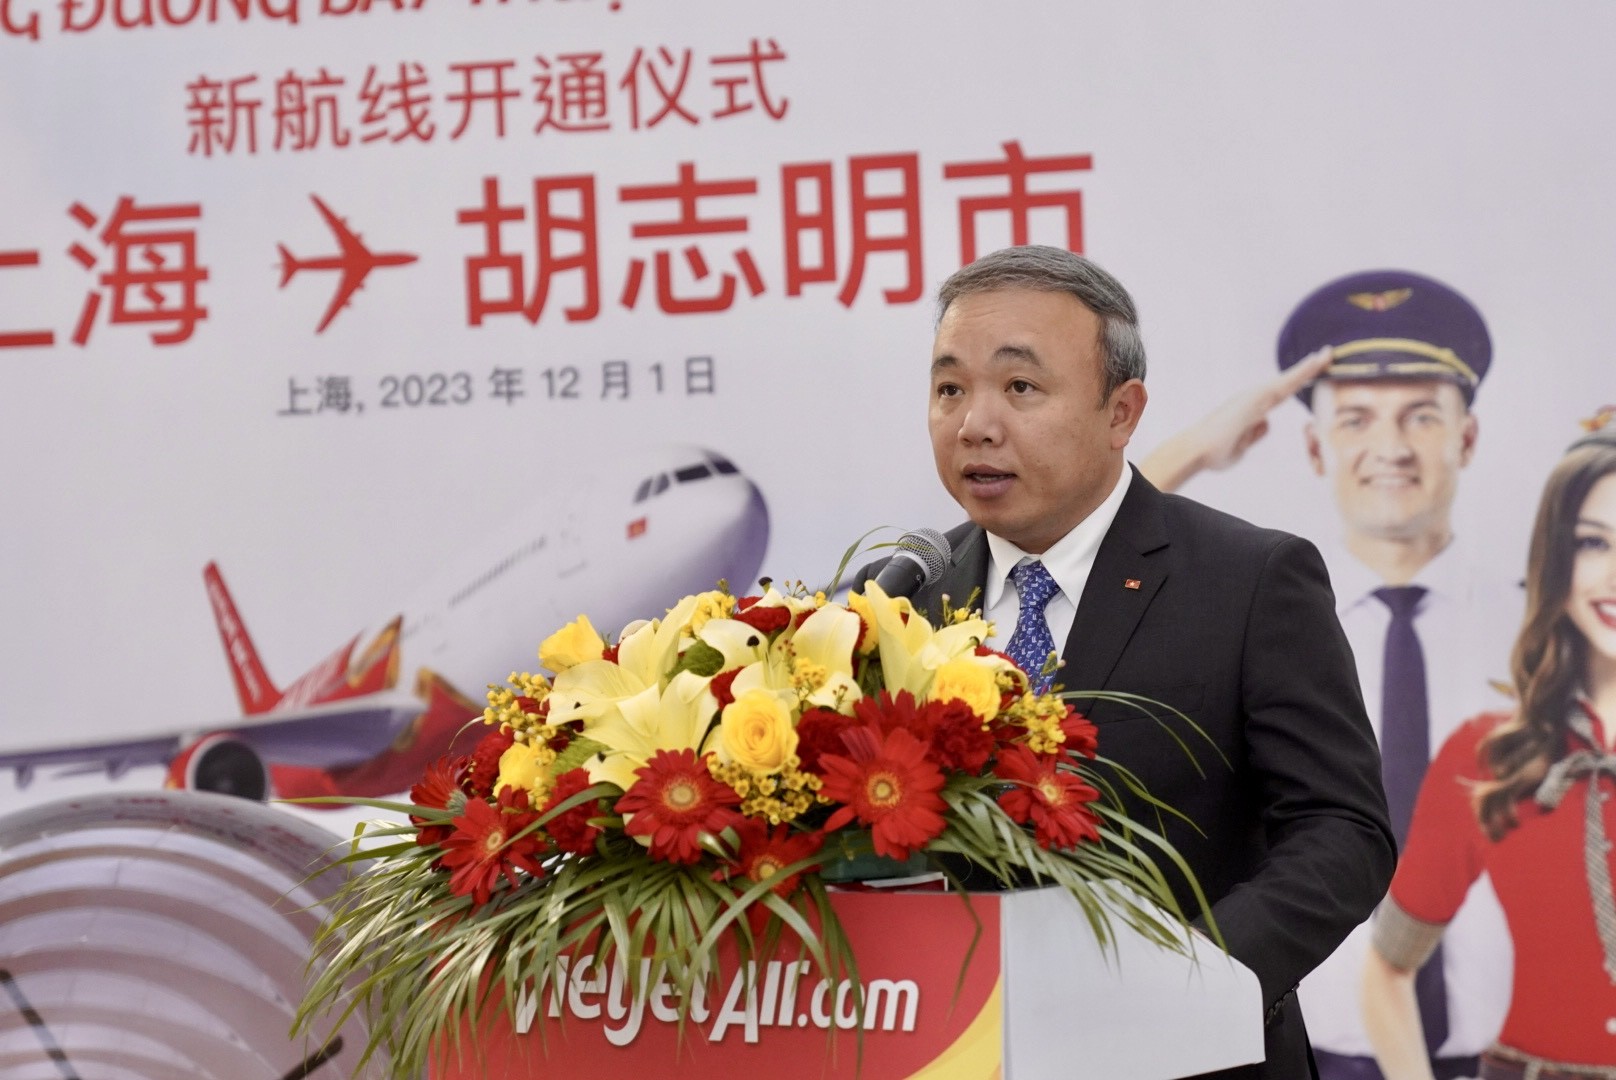 Tin vui: Vietjet vừa khai trương đường bay thẳng giữa Thượng Hải và TP Hồ Chí Minh - ảnh 6